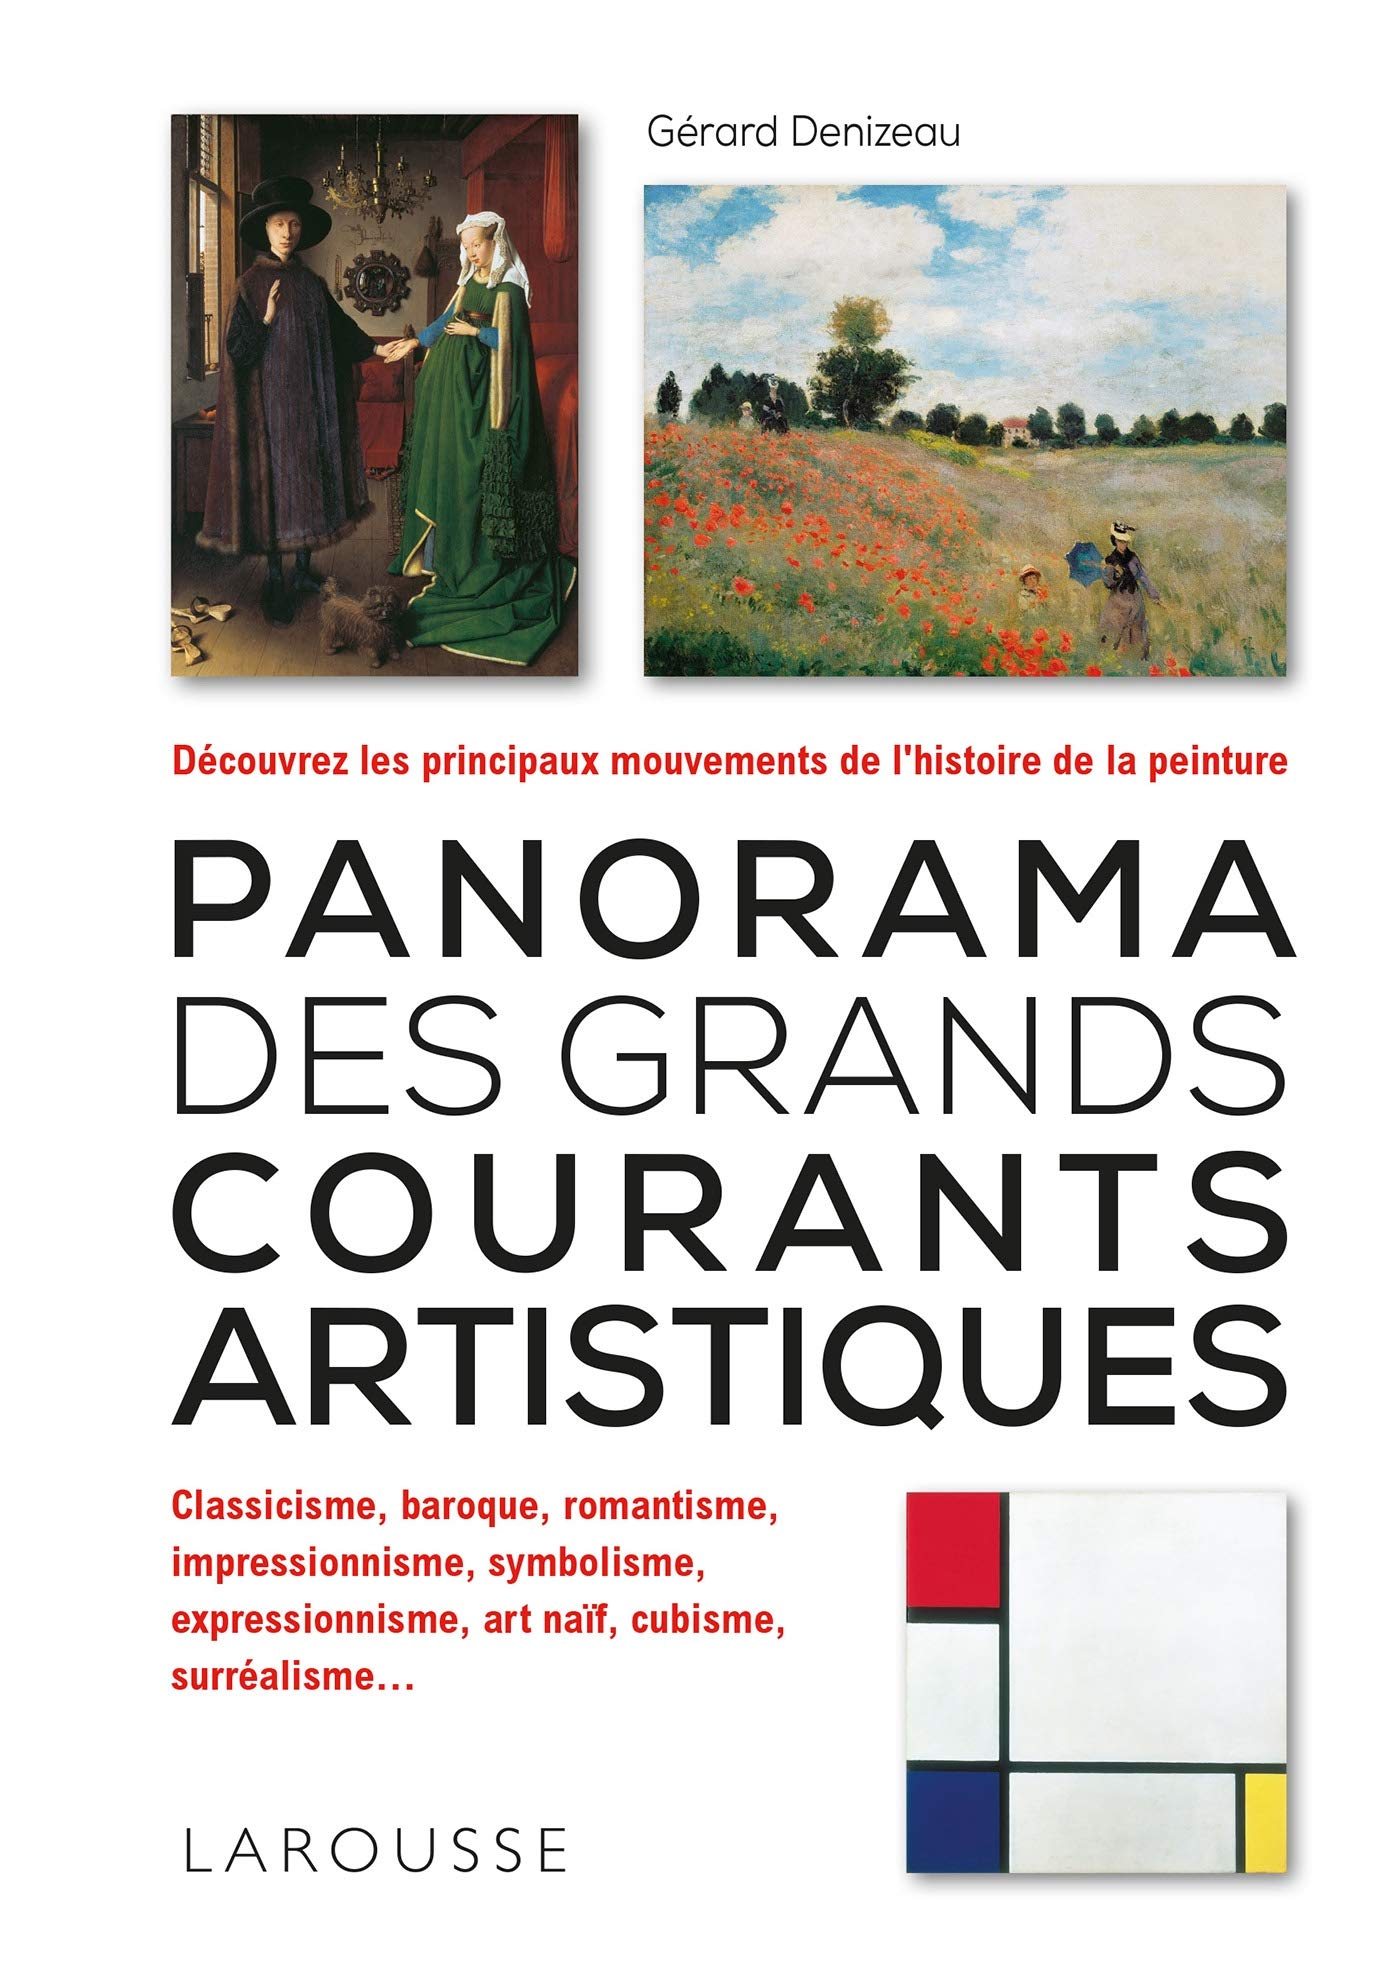 Panorama des grands courants artistiques | Gerard Denizeau